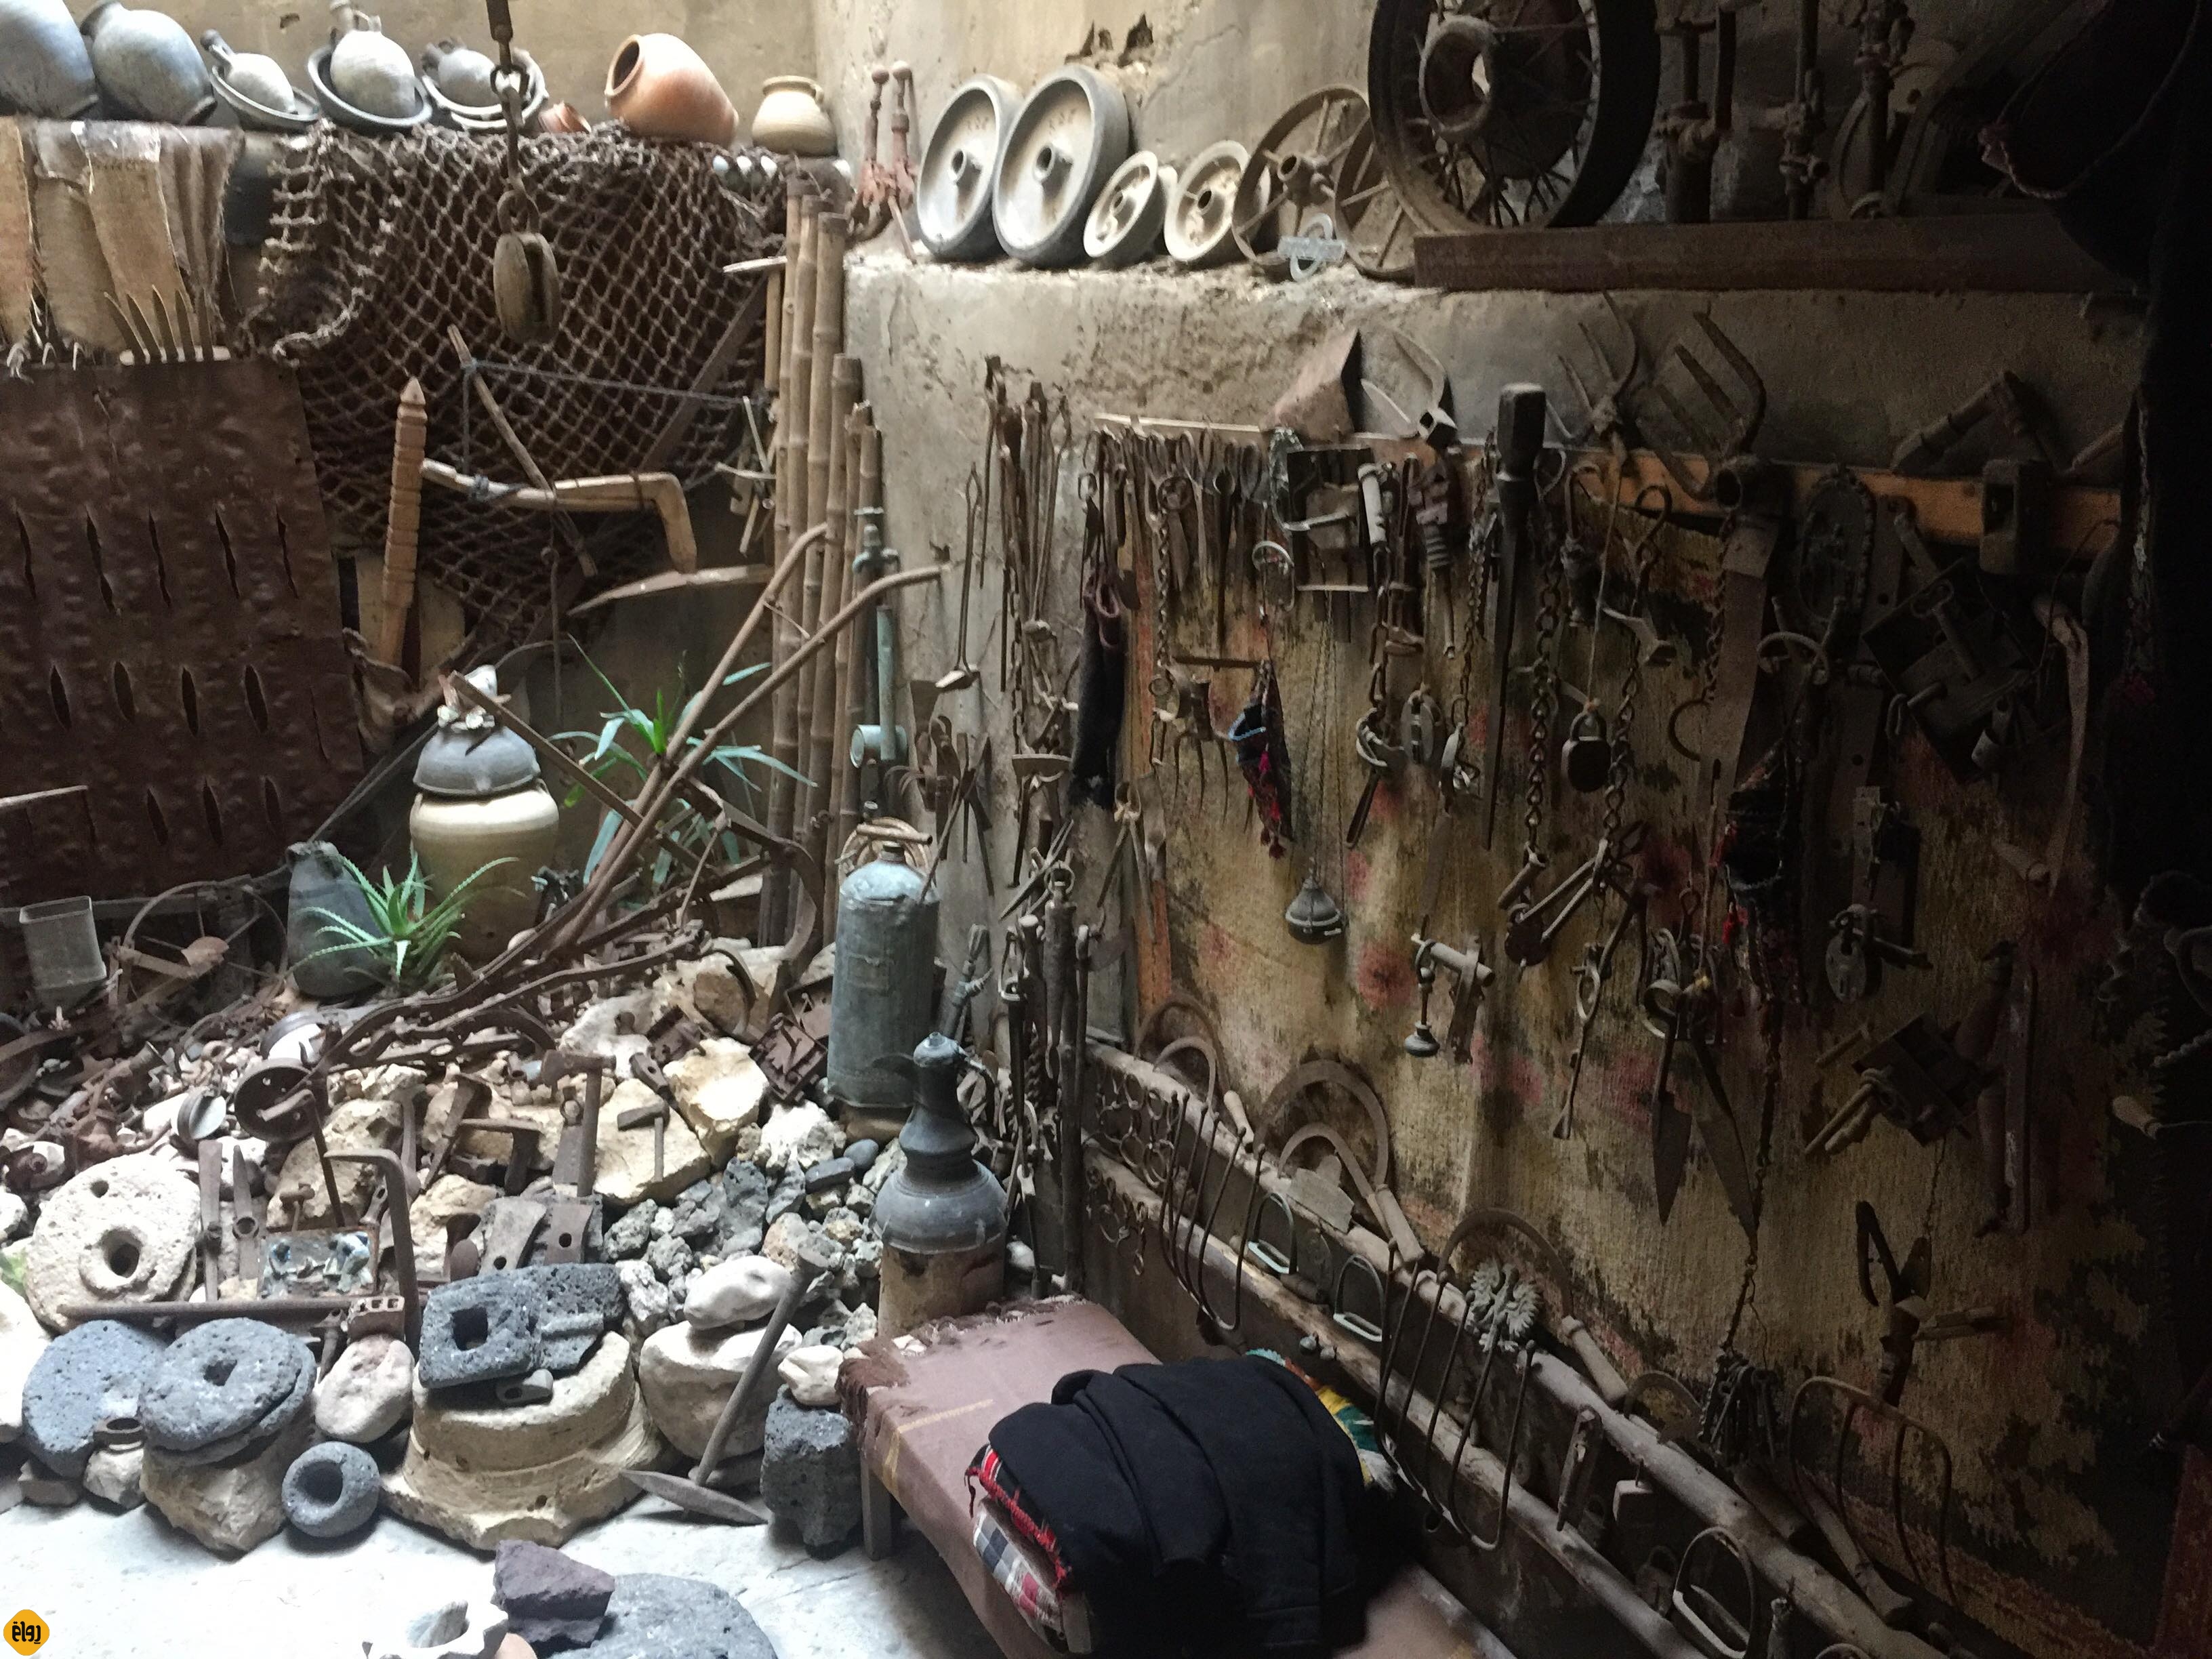 فلسطيني يملك متحفًا يحوي قطعا أثرية عمر بعضها أكثر من 4 آلاف سنة